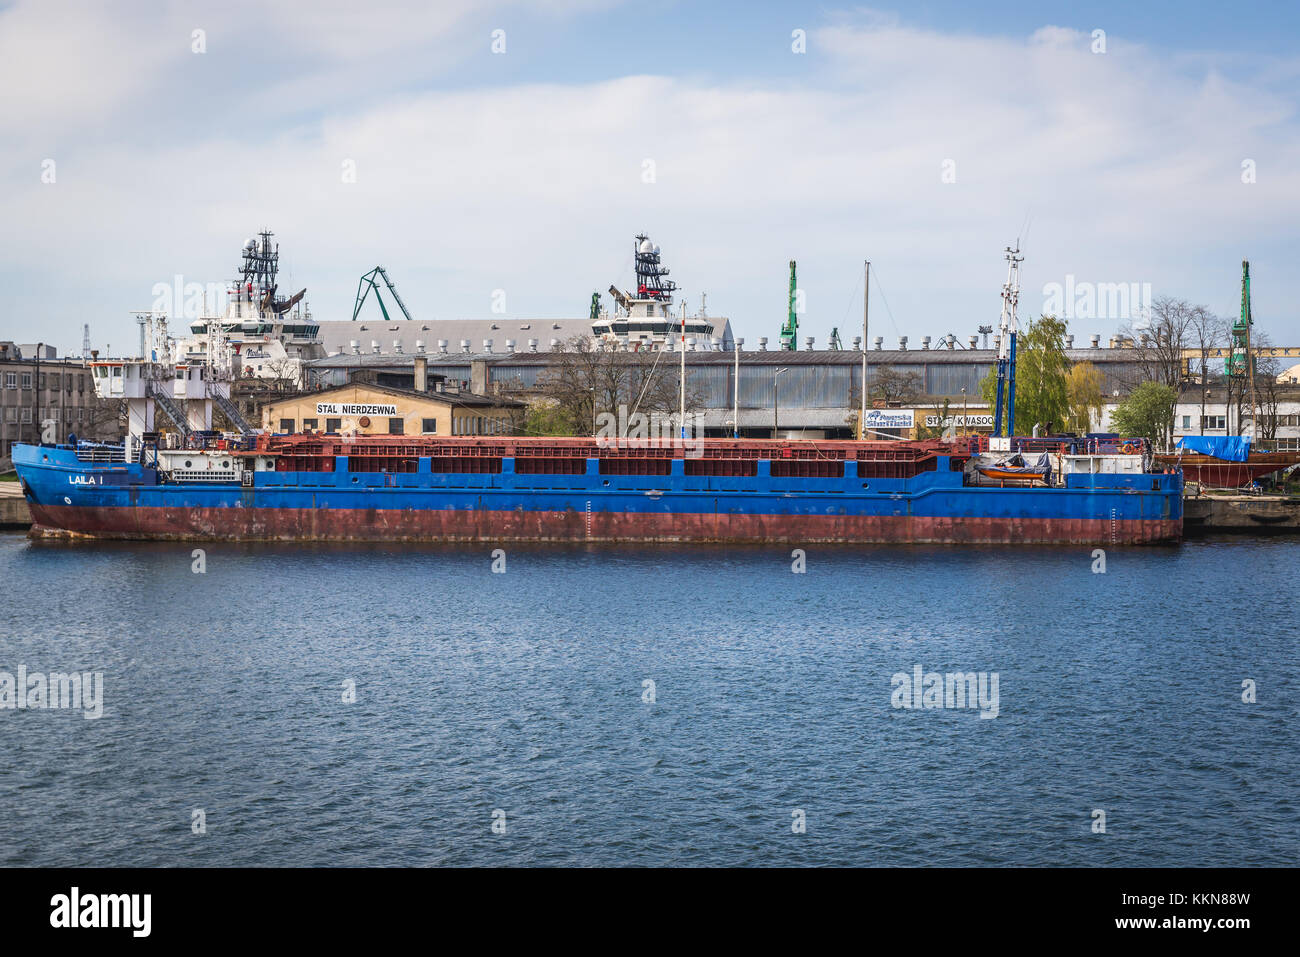 Laila I cargo ship in Port of Gdynia city, Pomeranian Voivodeship of Poland Stock Photo